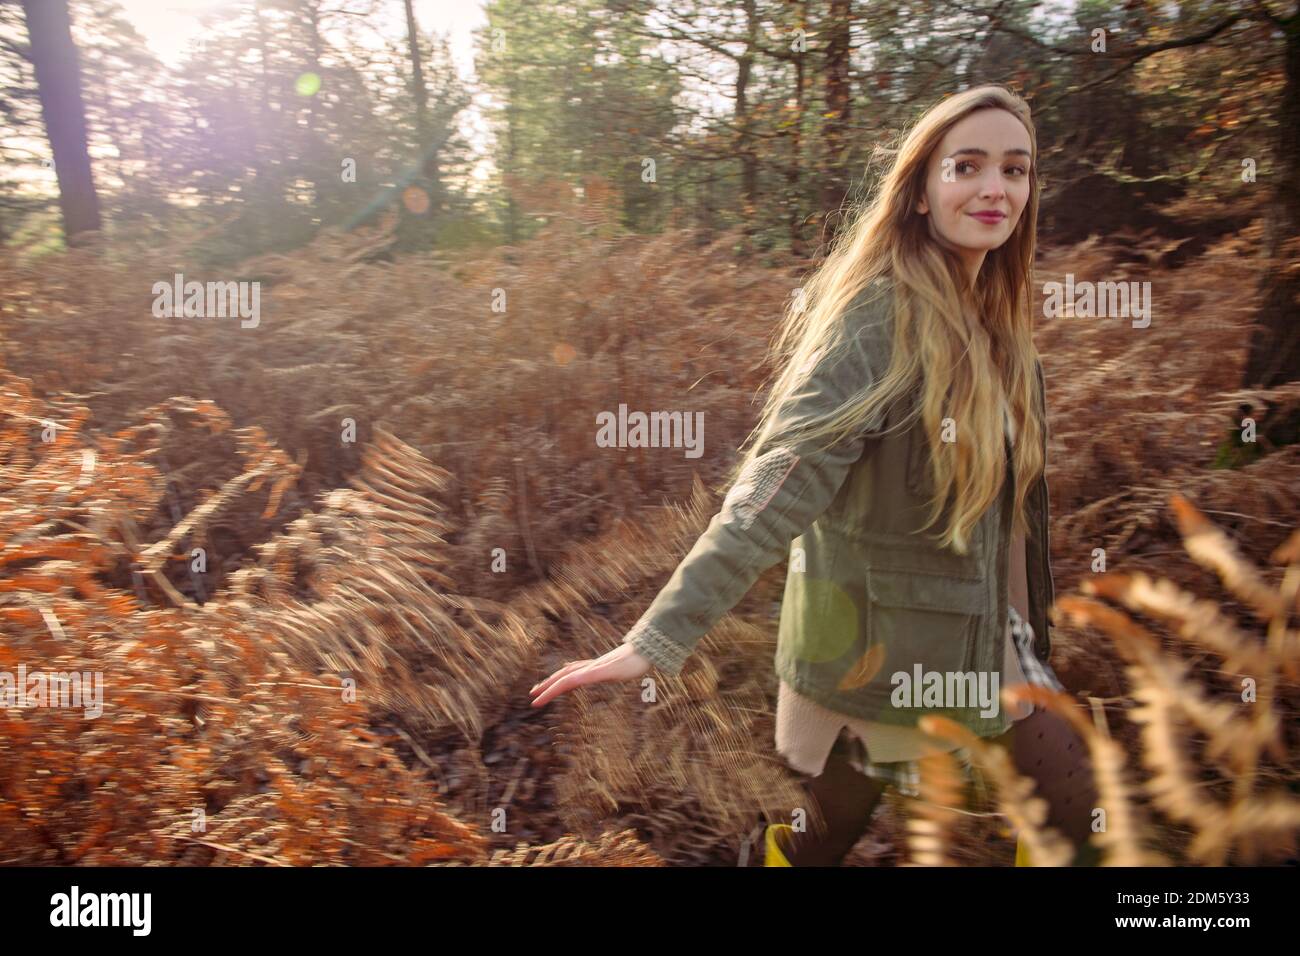 Una mujer joven y natural (20 años) corre por los helechos otoñales y se divierte en un entorno de bosque con una sensación de movimiento en un día soleado. Foto de stock